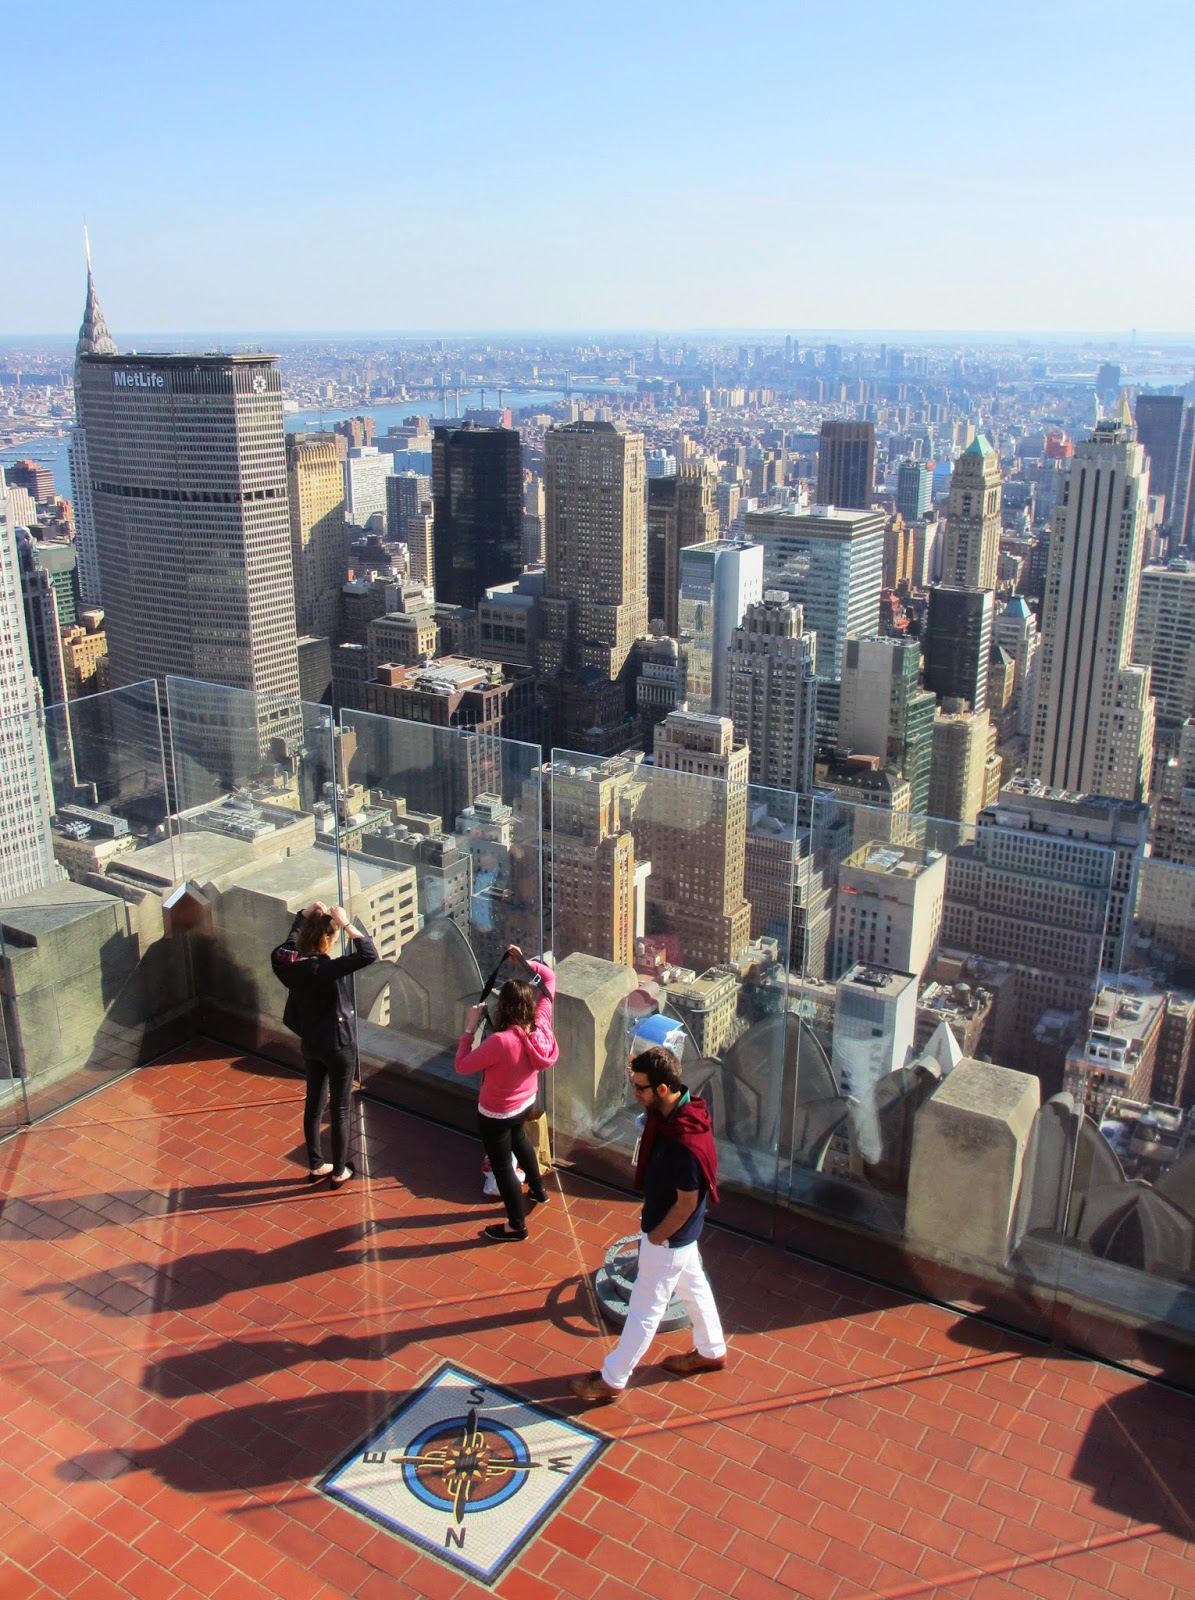 Subir ao TOP OF THE ROCK, ou como estar no Top of the World, em Nova Iorque | EUA